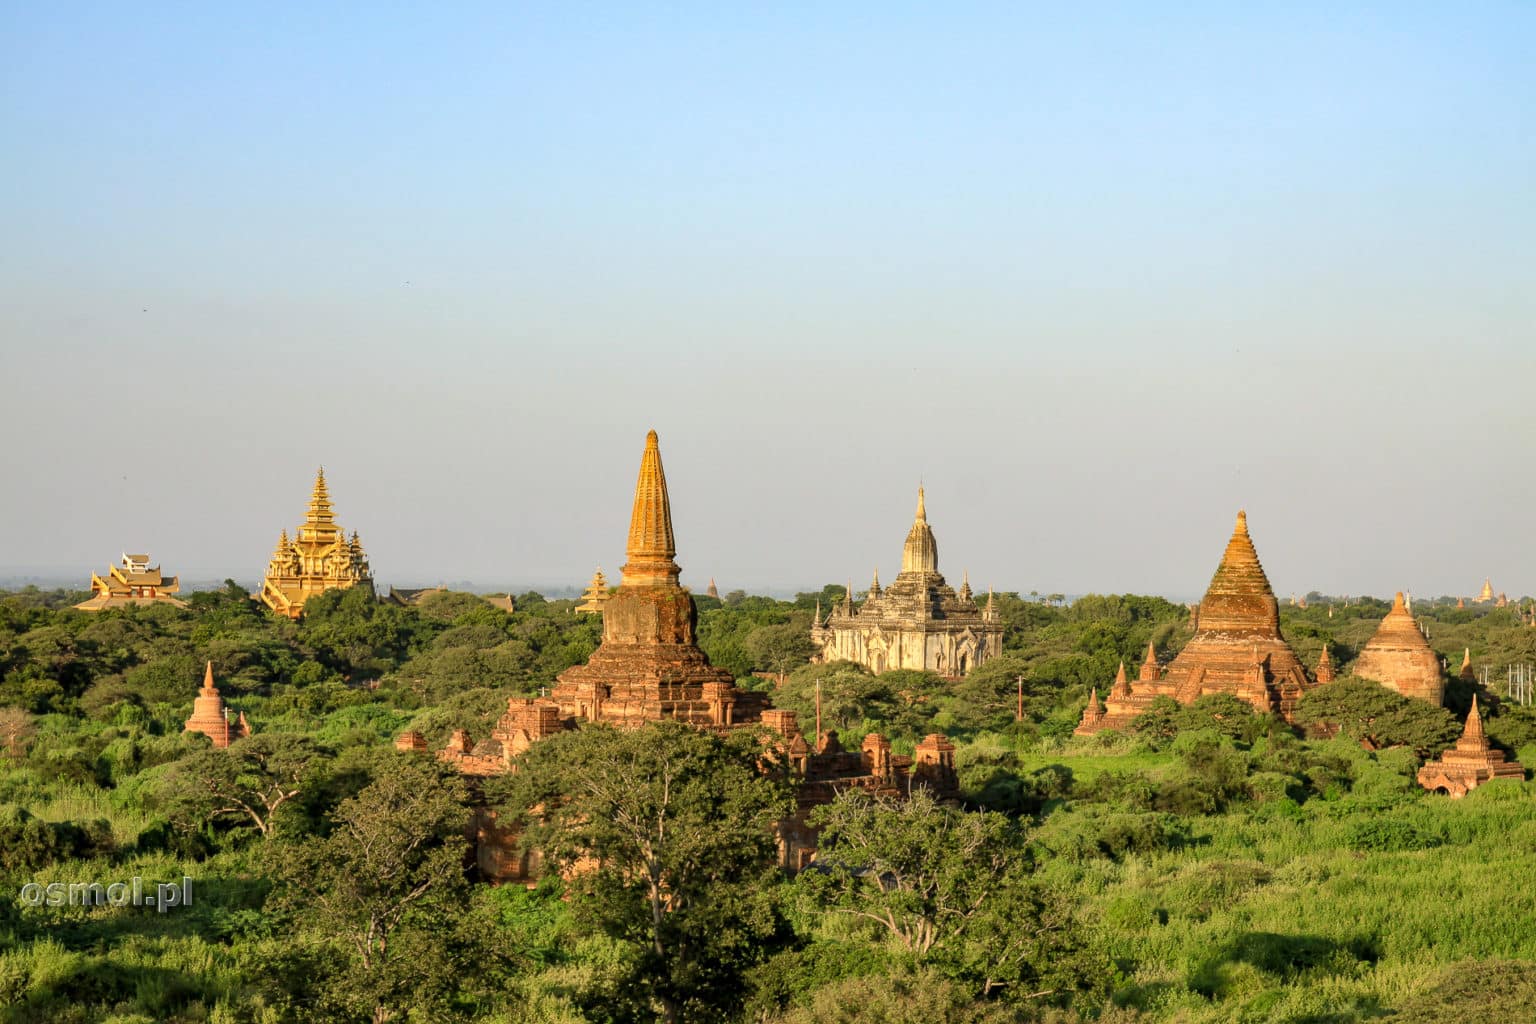 Bagan o świcie , kiedy słońce jeszcze nie pali a pagody dostojnie prezentują się w miękkim porannym świetle.